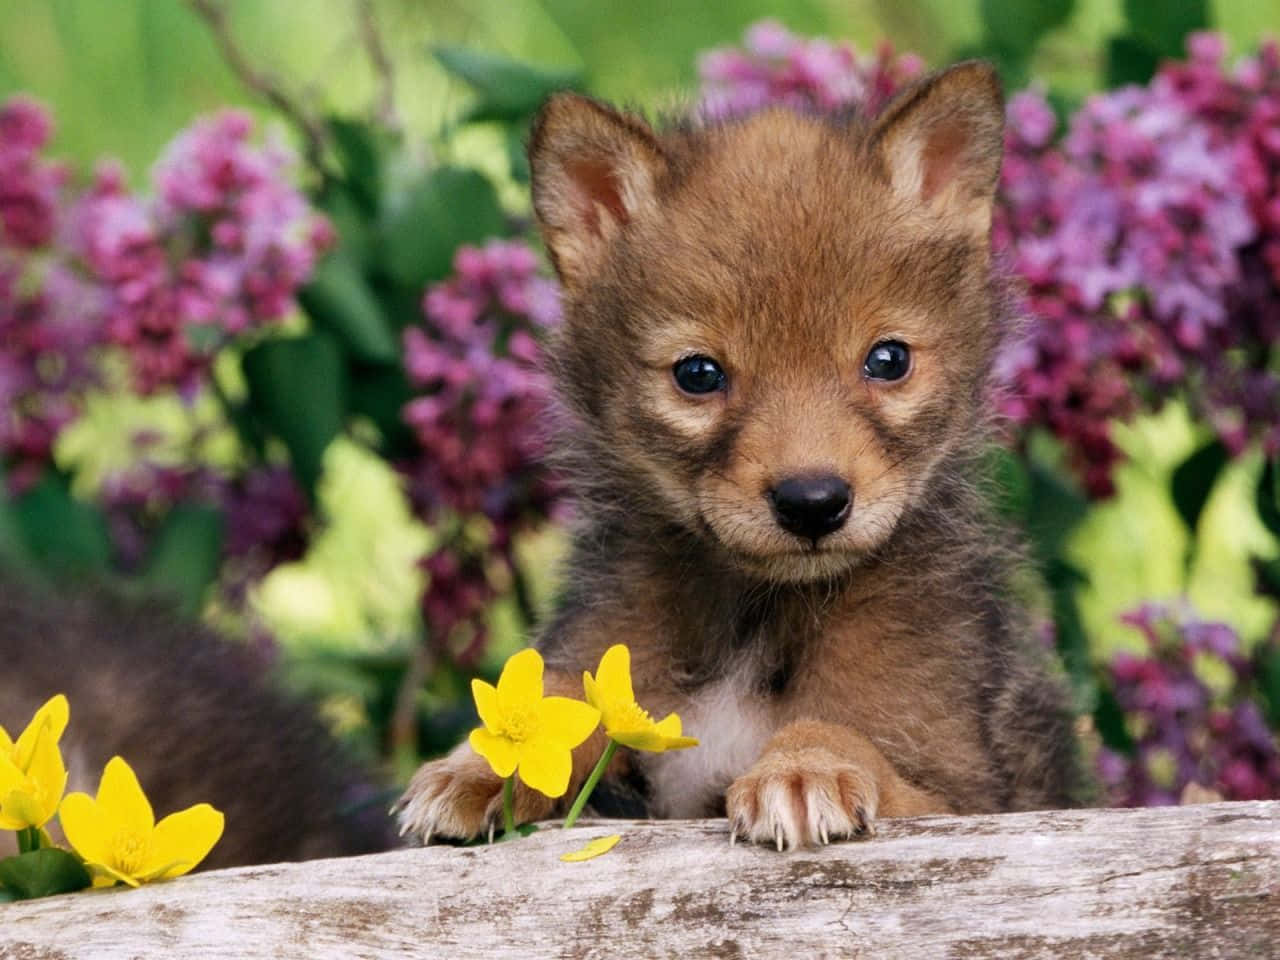 Einkleiner Wolfswelpe Sitzt Auf Einem Baumstamm Mit Gelben Blumen.